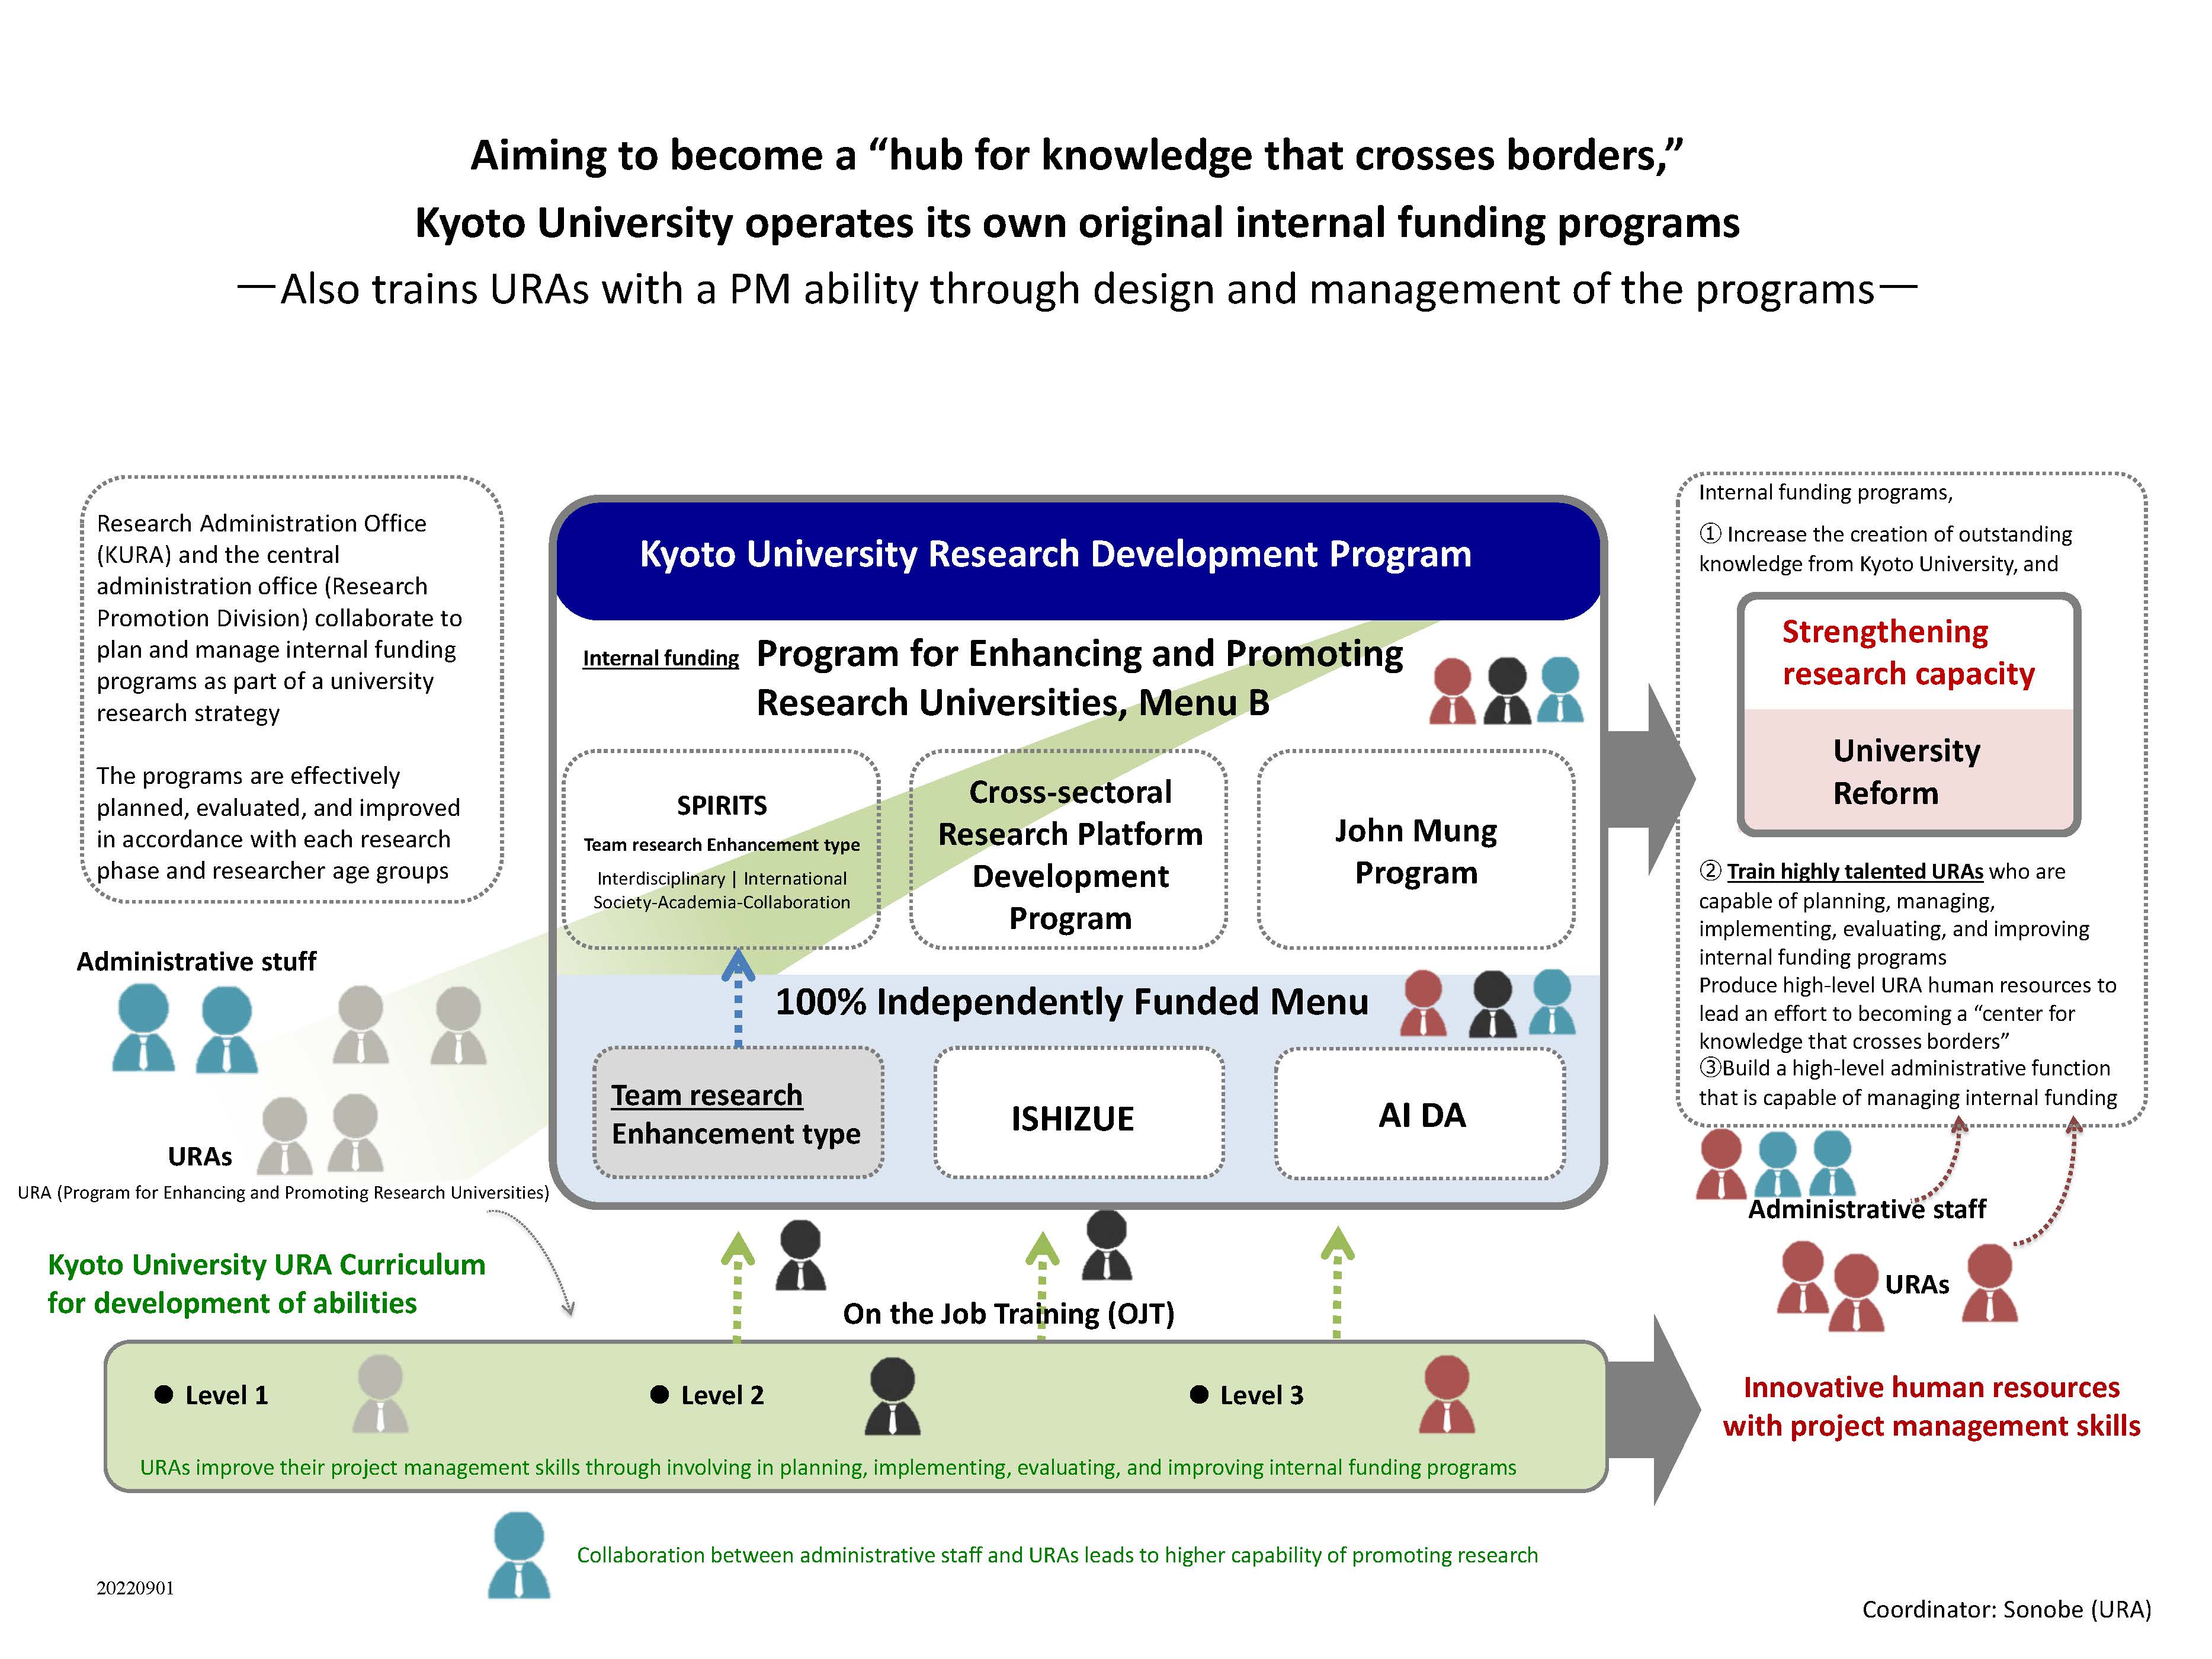 Research Development Program (RDP) – Design/management of internal funds